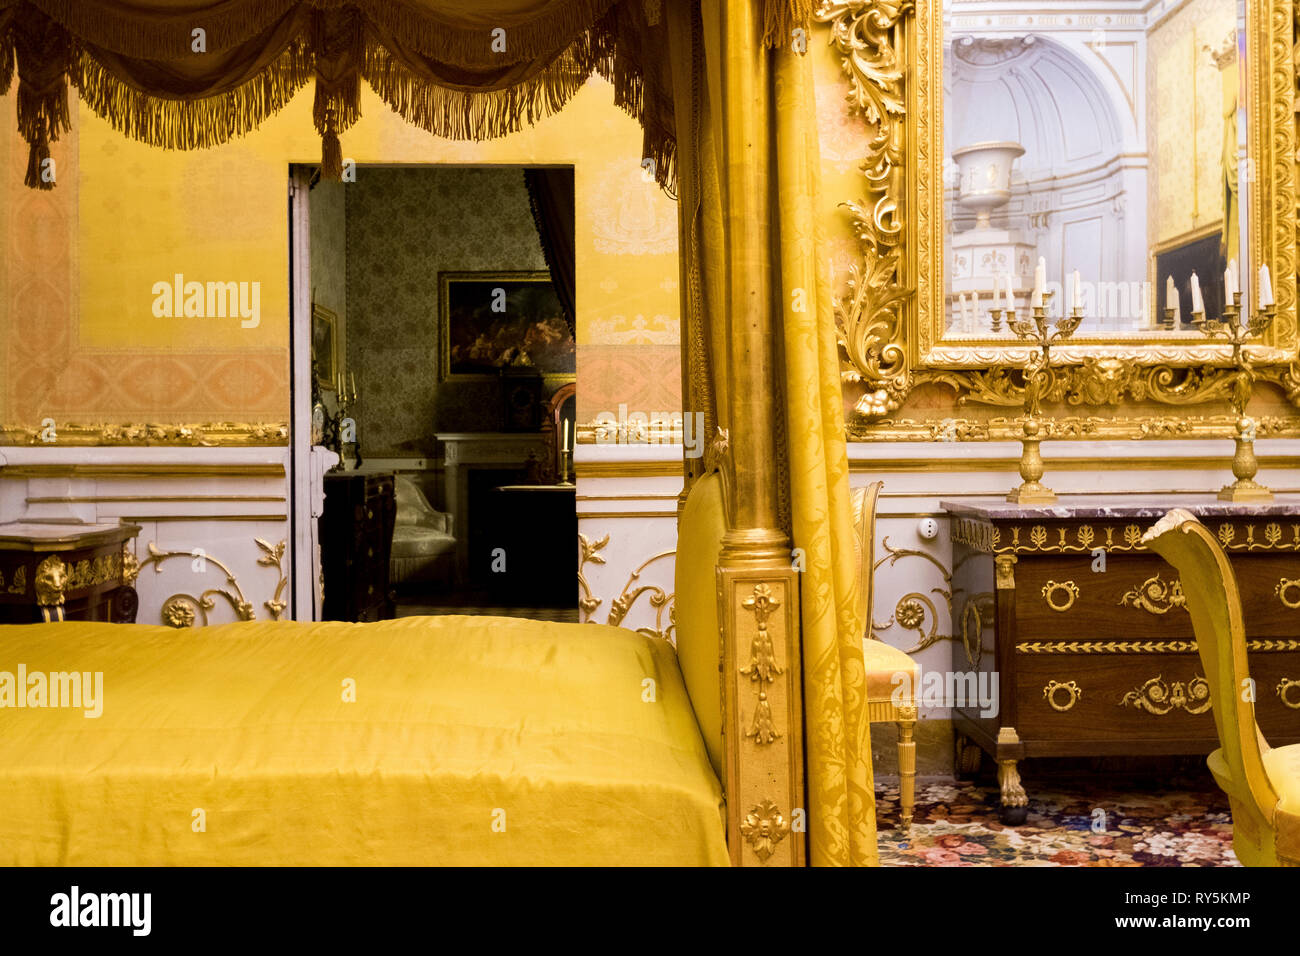 Chambre Jaune détail, une partie de l'intérieur riche du Palais Pitti à Florence, Italie Banque D'Images